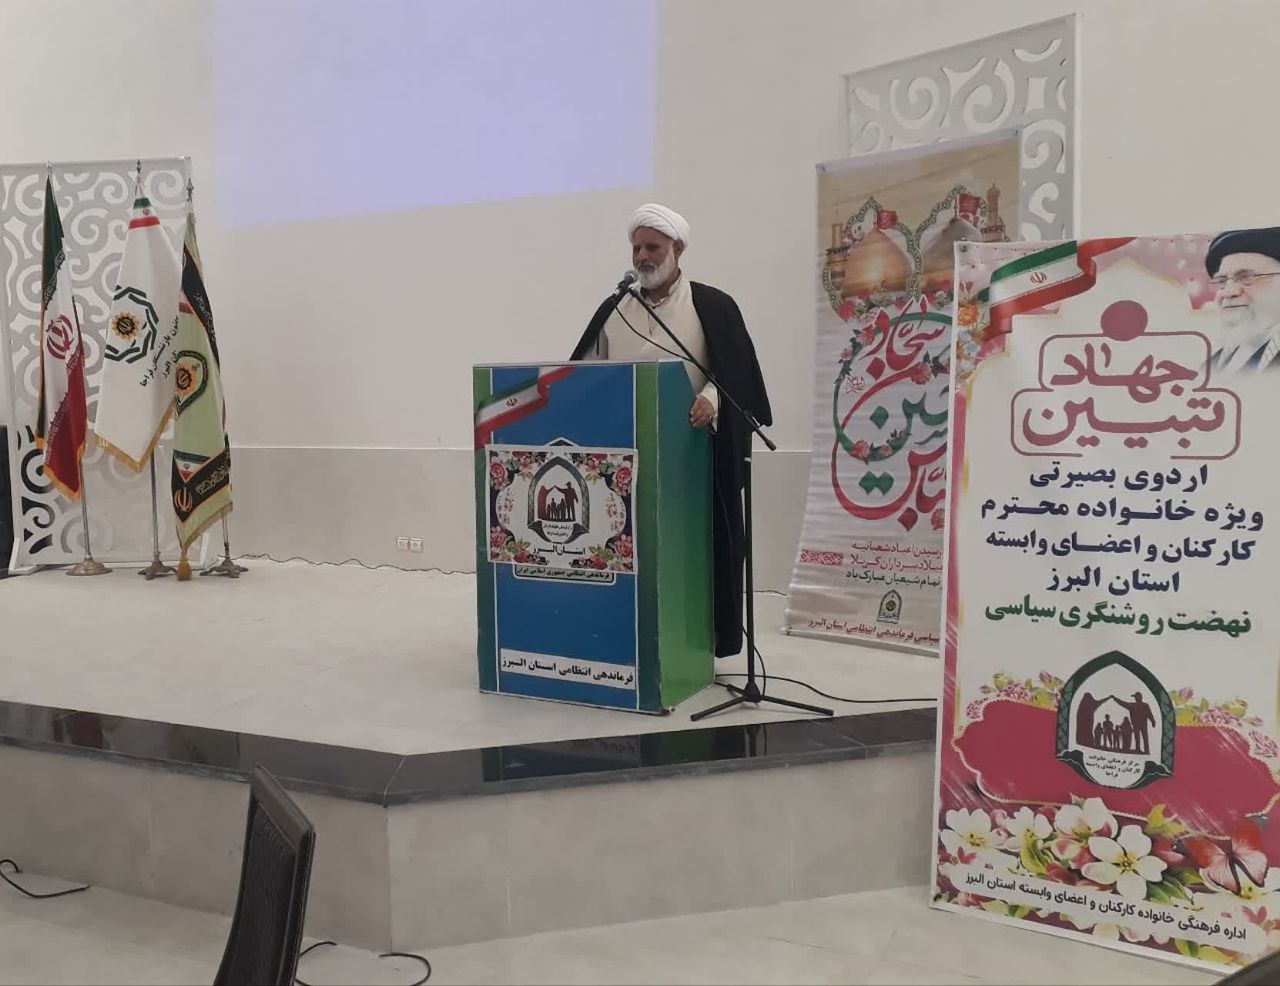 به مناسبت دهه مبارک فجر مراسم ضیافتی با حضور 67عضو کانون به همراه خانواده در استان البرز برگزار شد.